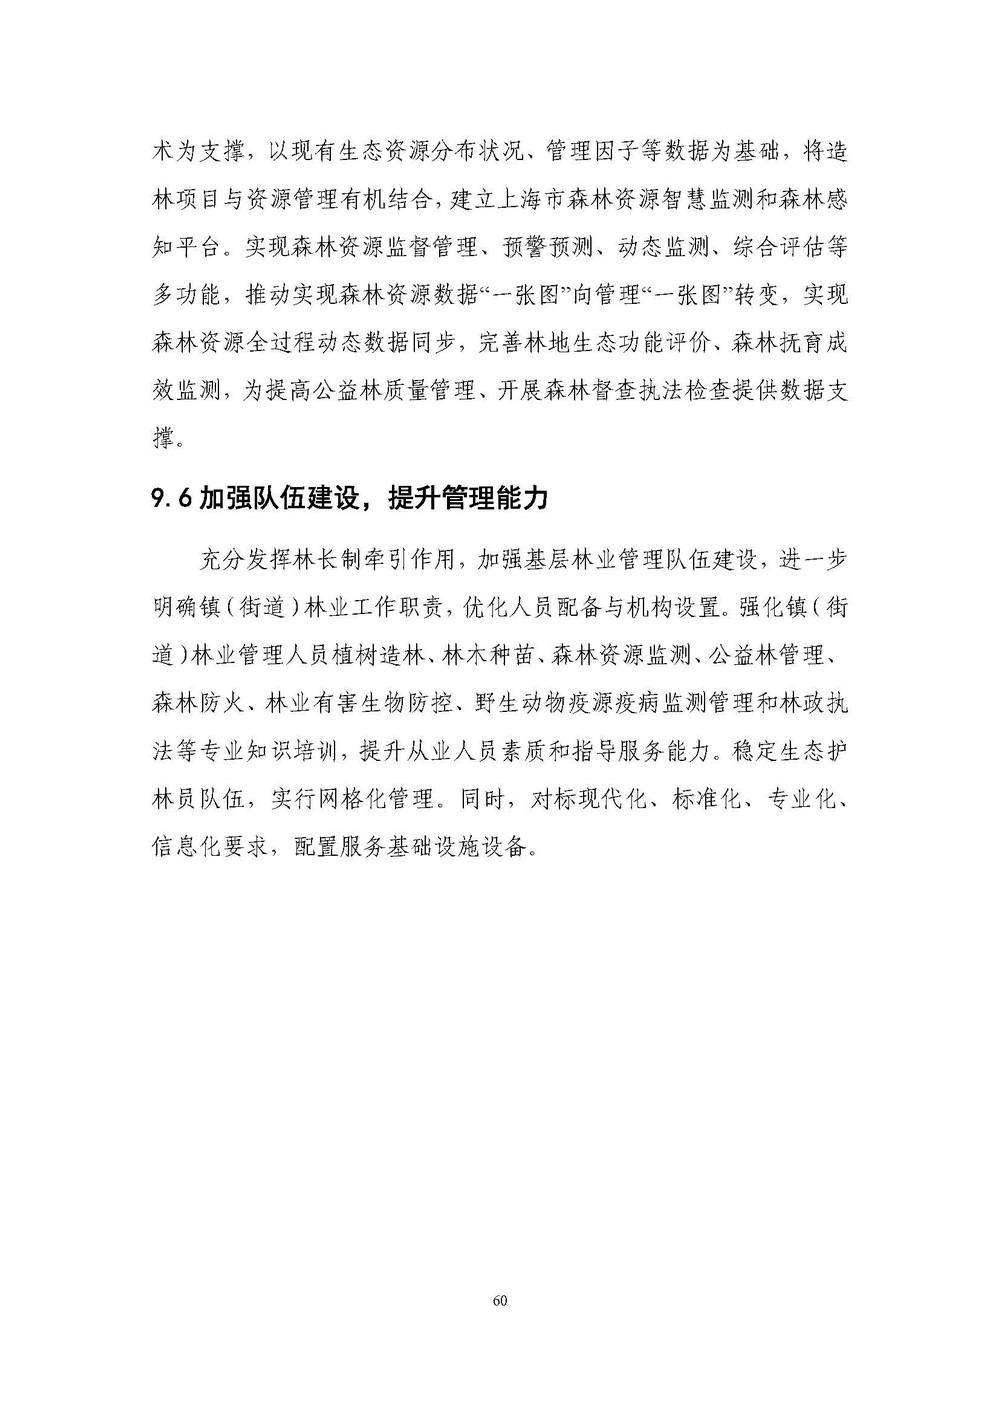 上海市森林和林地保护利用规划文本 公开稿 附图_页面_63.jpg